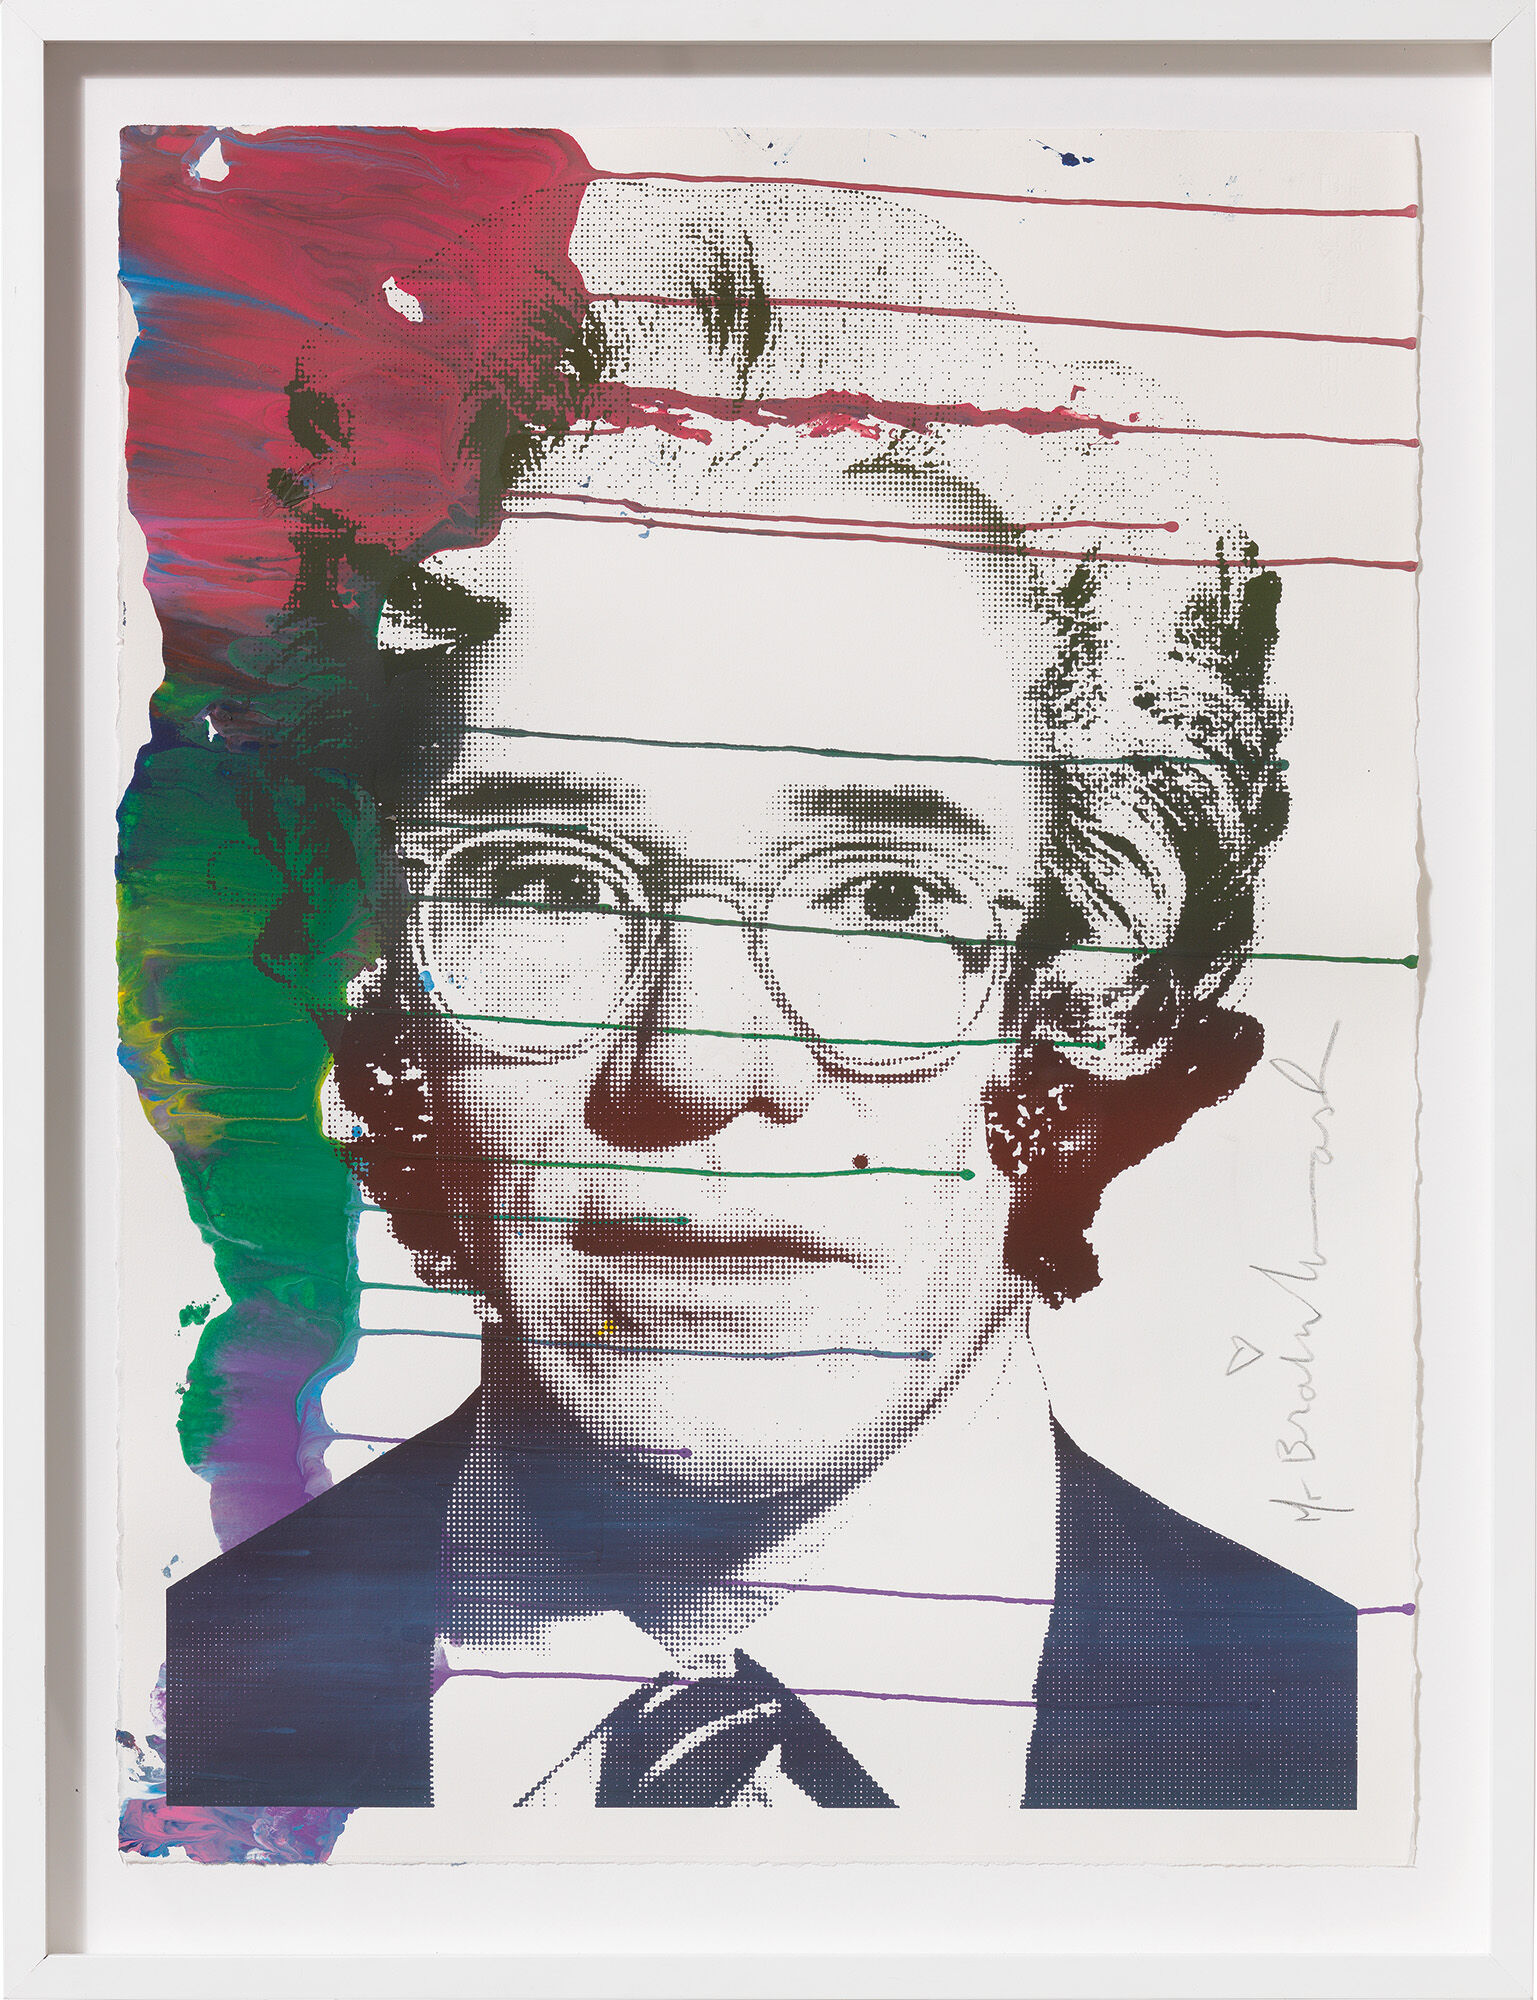 Billede "Andy Warhol" (2009) (Unikt værk) von Mr. Brainwash